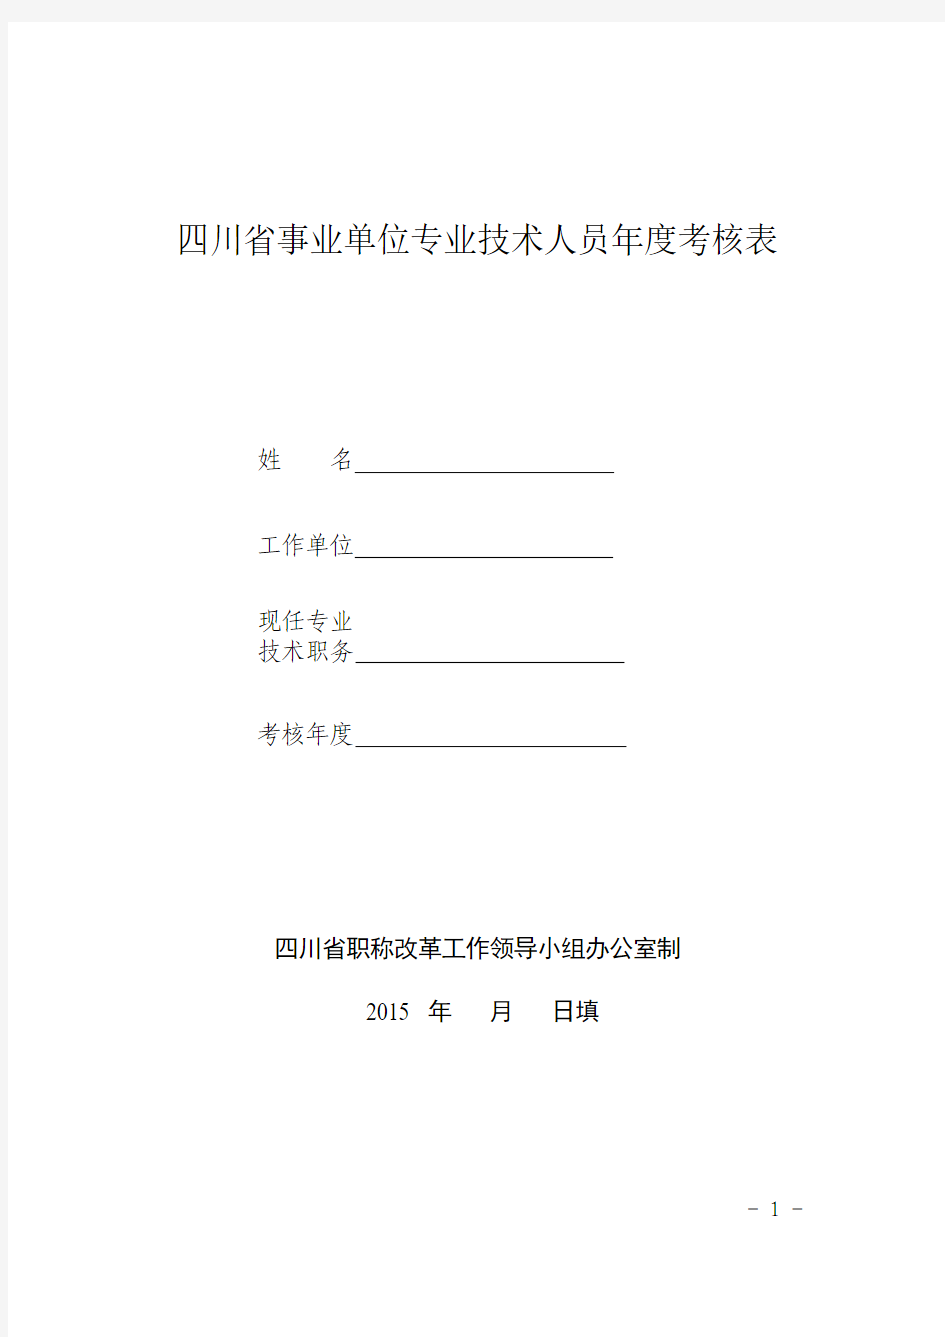 四川省事业单位专业技术人员年度考核表